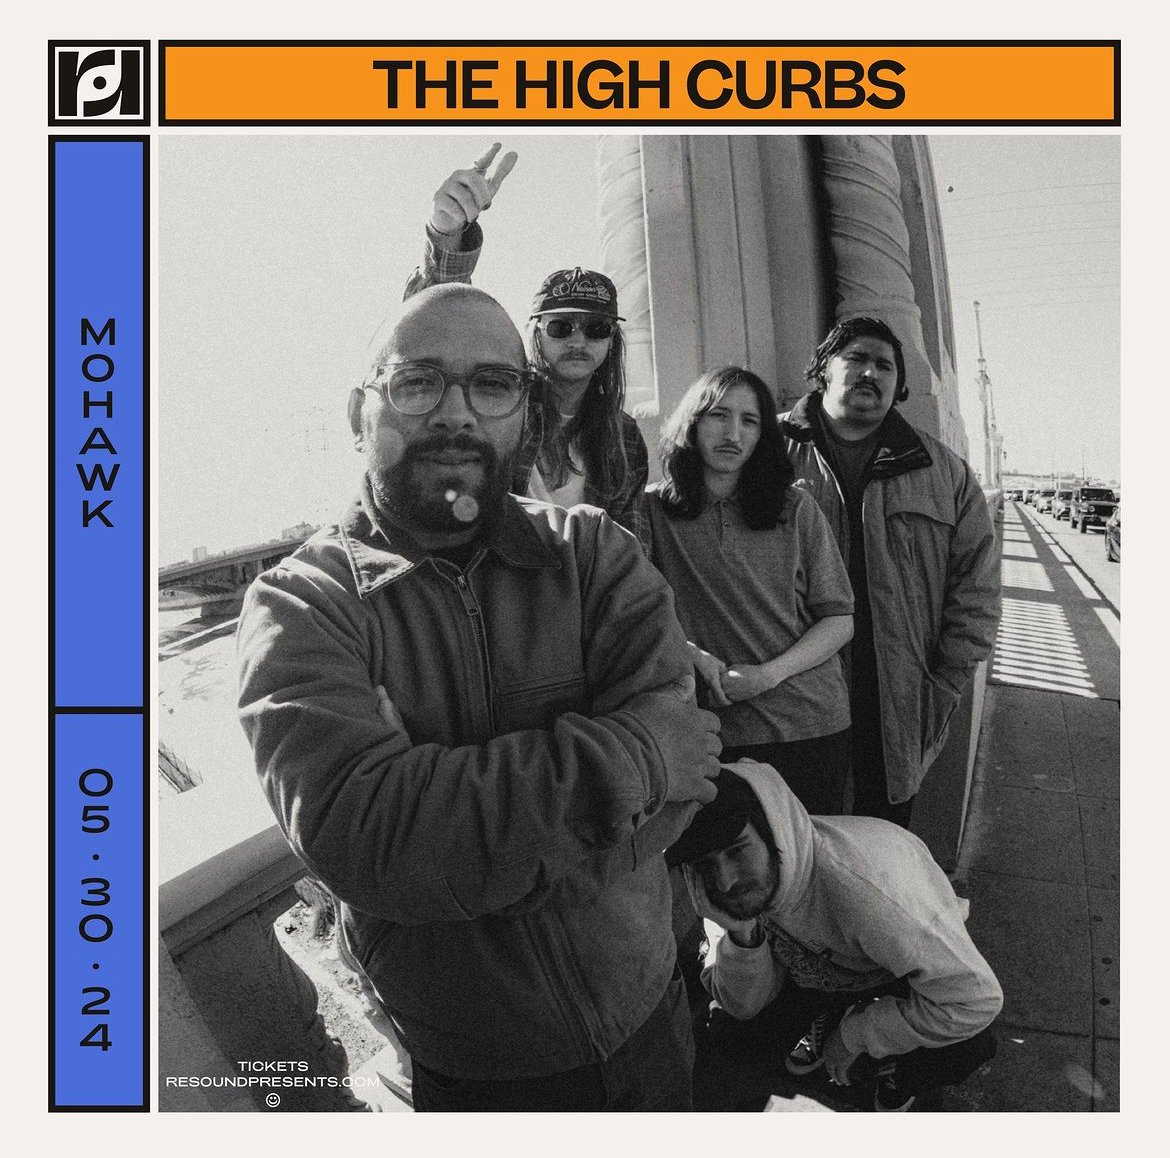 The High Curbs